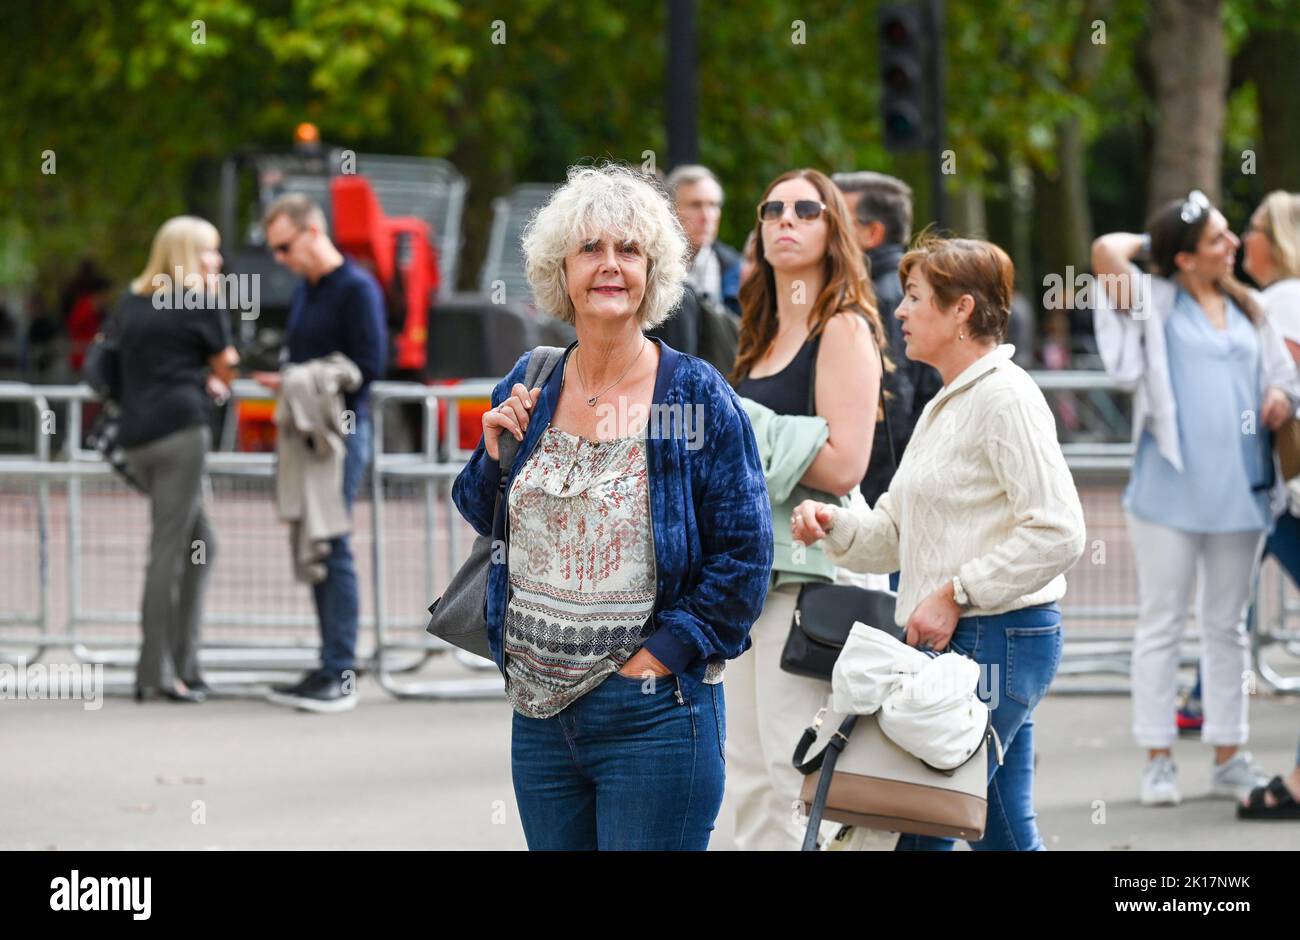 Londres vues - femme mature touriste Banque D'Images